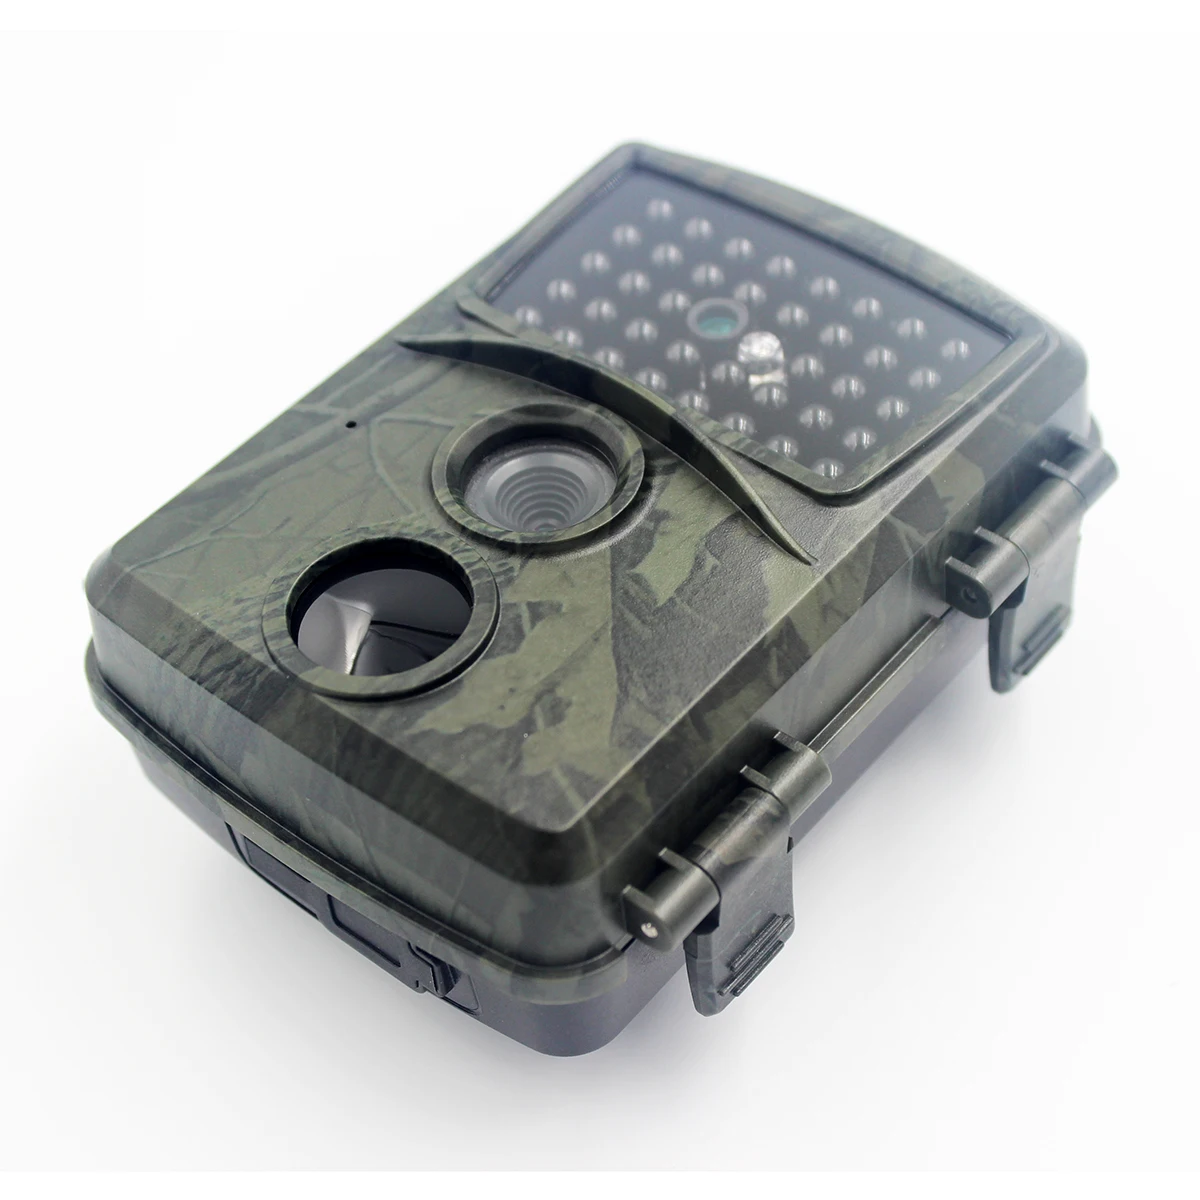 PR600 12MP 1080P охотничий троп камера наружная водонепроницаемая IP54 скрытая камера ночного видения